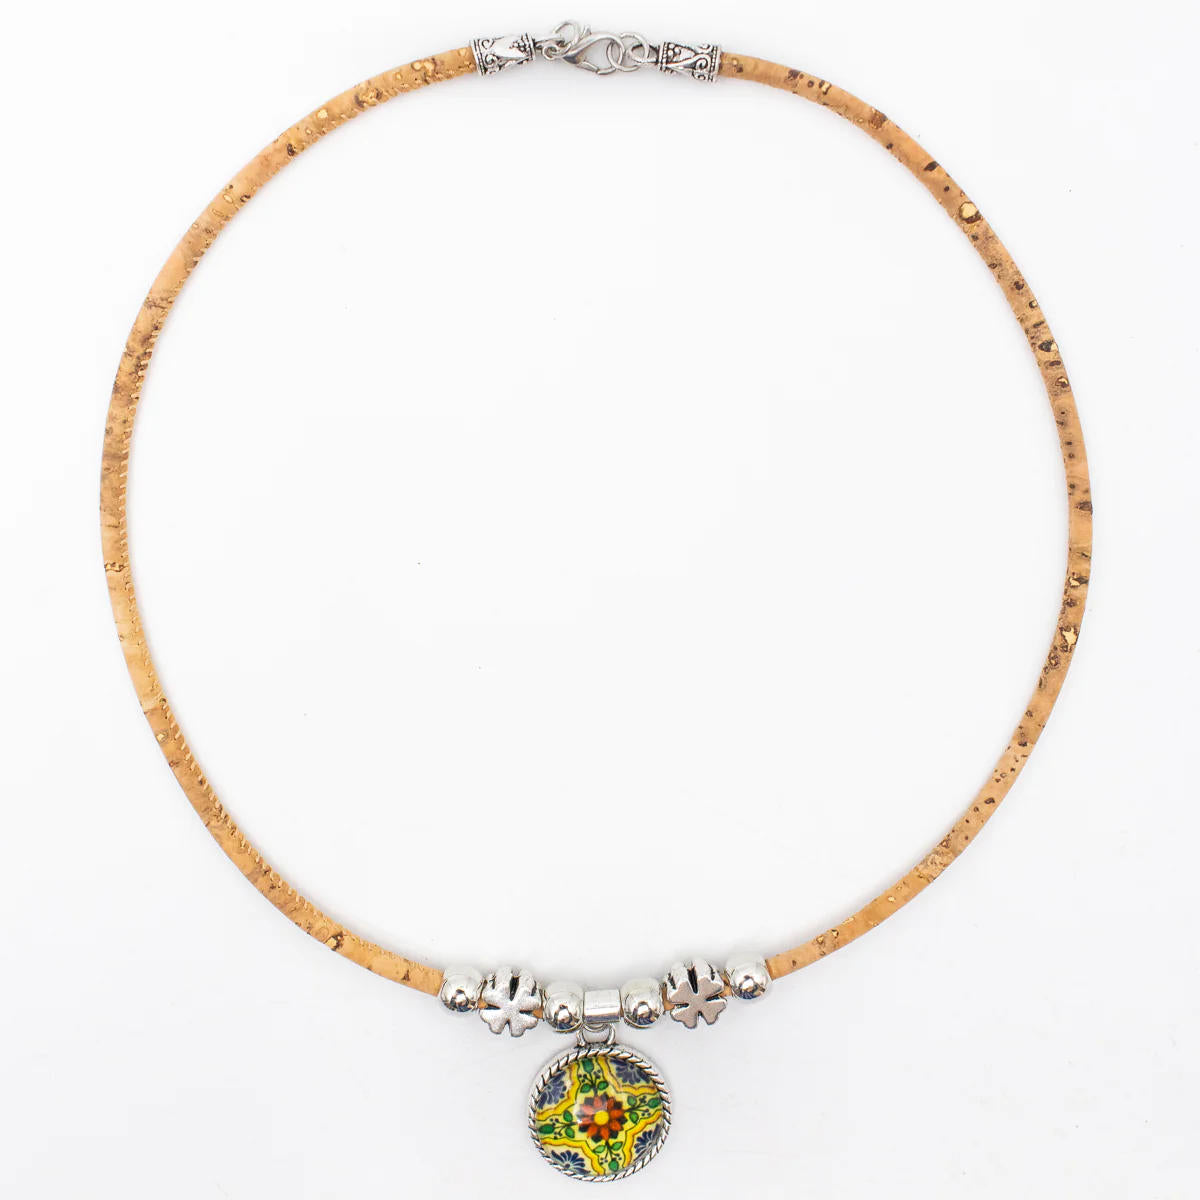 Vegane Halskette aus Naturkork mit Keramik Anhänger